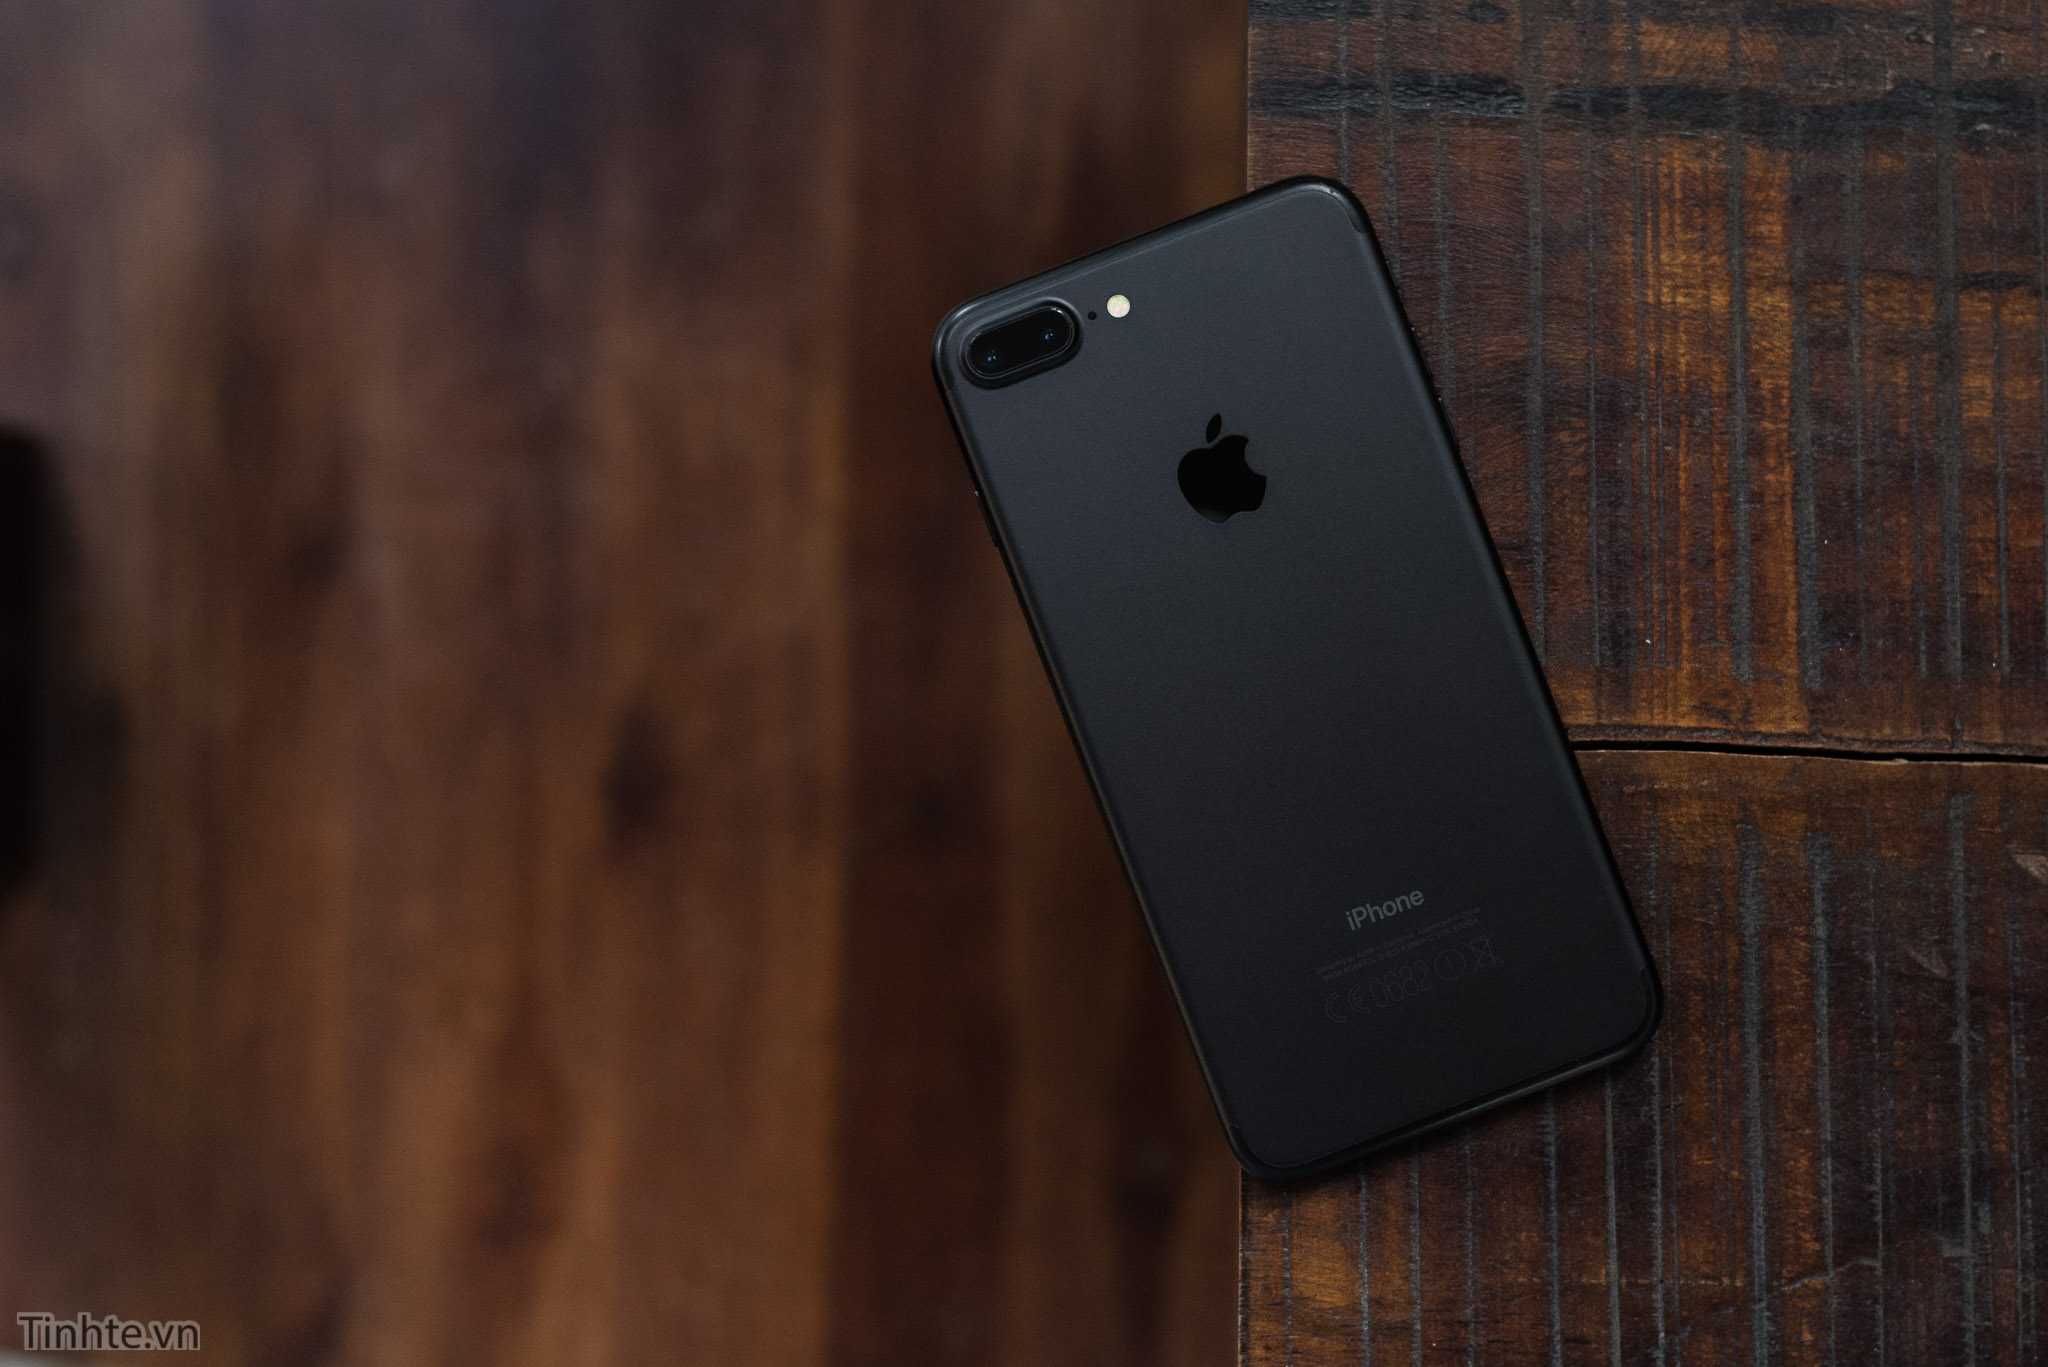 iPhone 7 phiên bản Jet Black chống xước tốt đến đâu? | VTV.VN